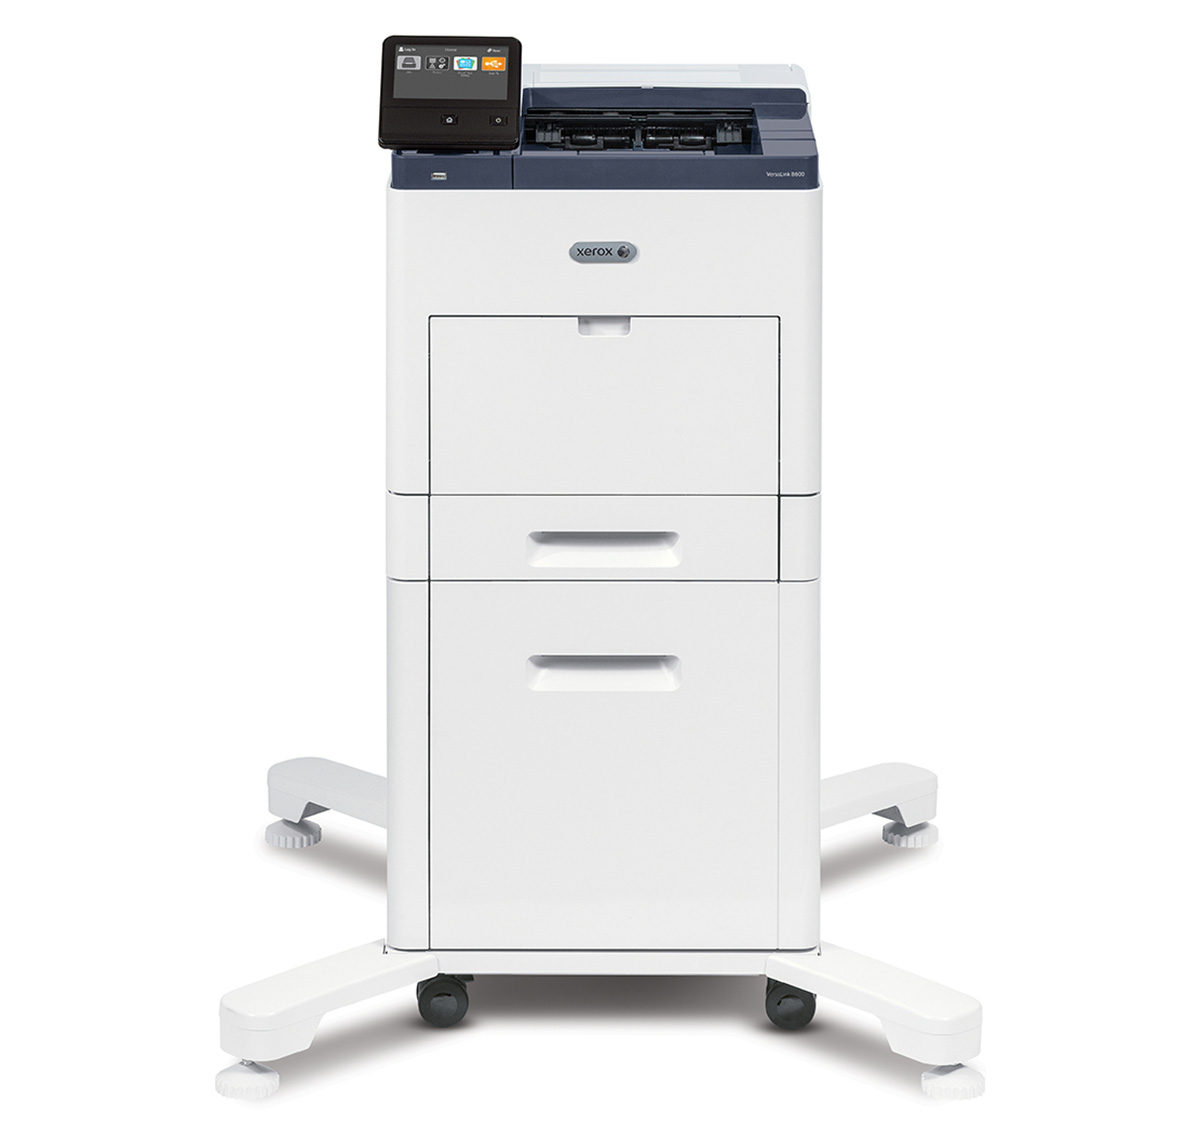 Imprimante Xerox VersaLink B610 équipée d'un socle sur roulettes et d'un panneau de commande tactile, représentant une solution d'impression efficace et moderne pour les entreprises, proposée par Xerox D&O Partners.